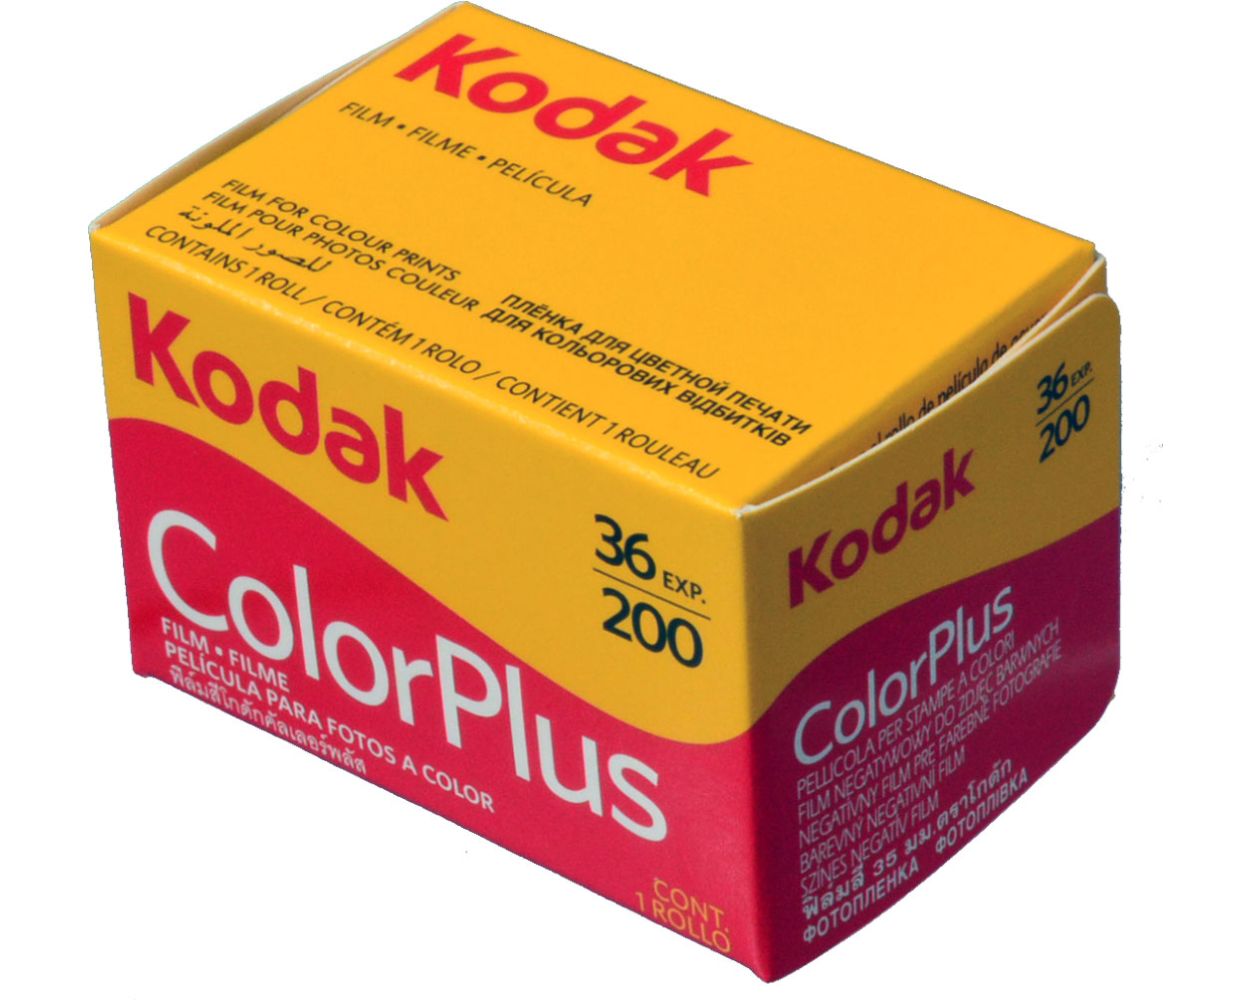 Kodak Color Plus 200 135-36 Exp.